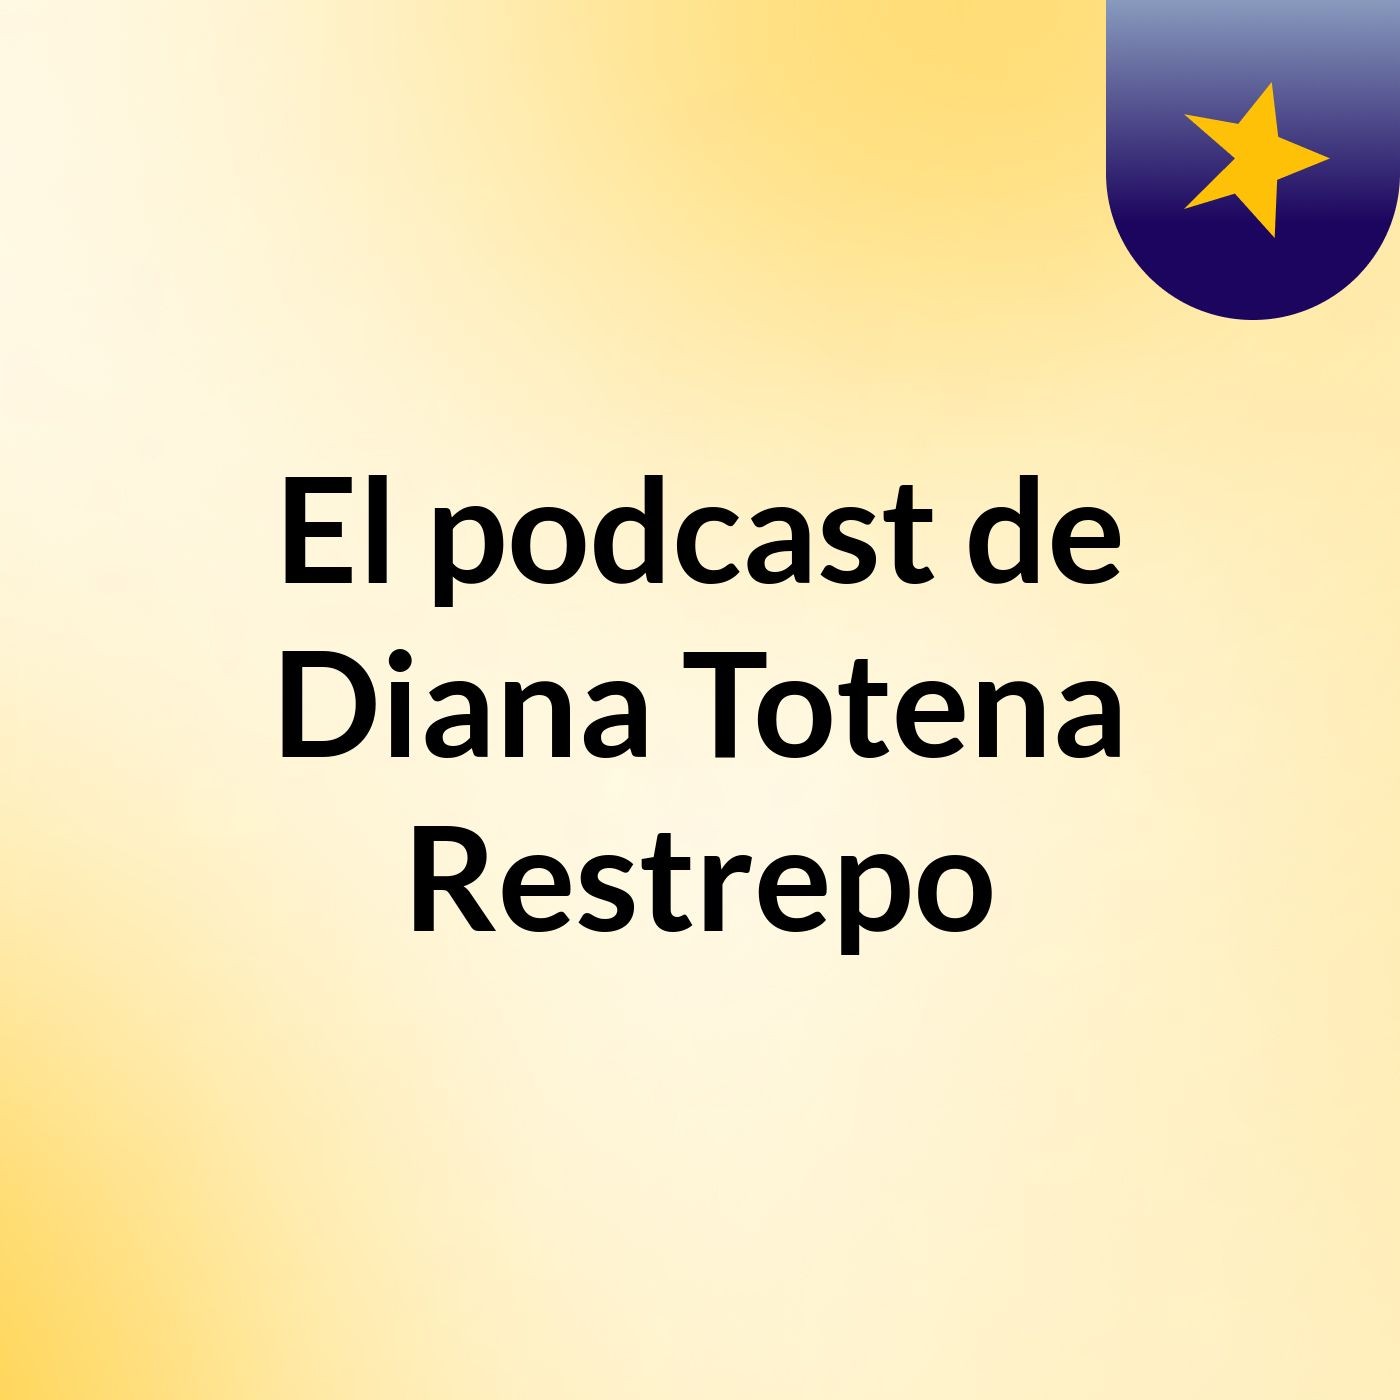 El podcast de Diana Totena Restrepo